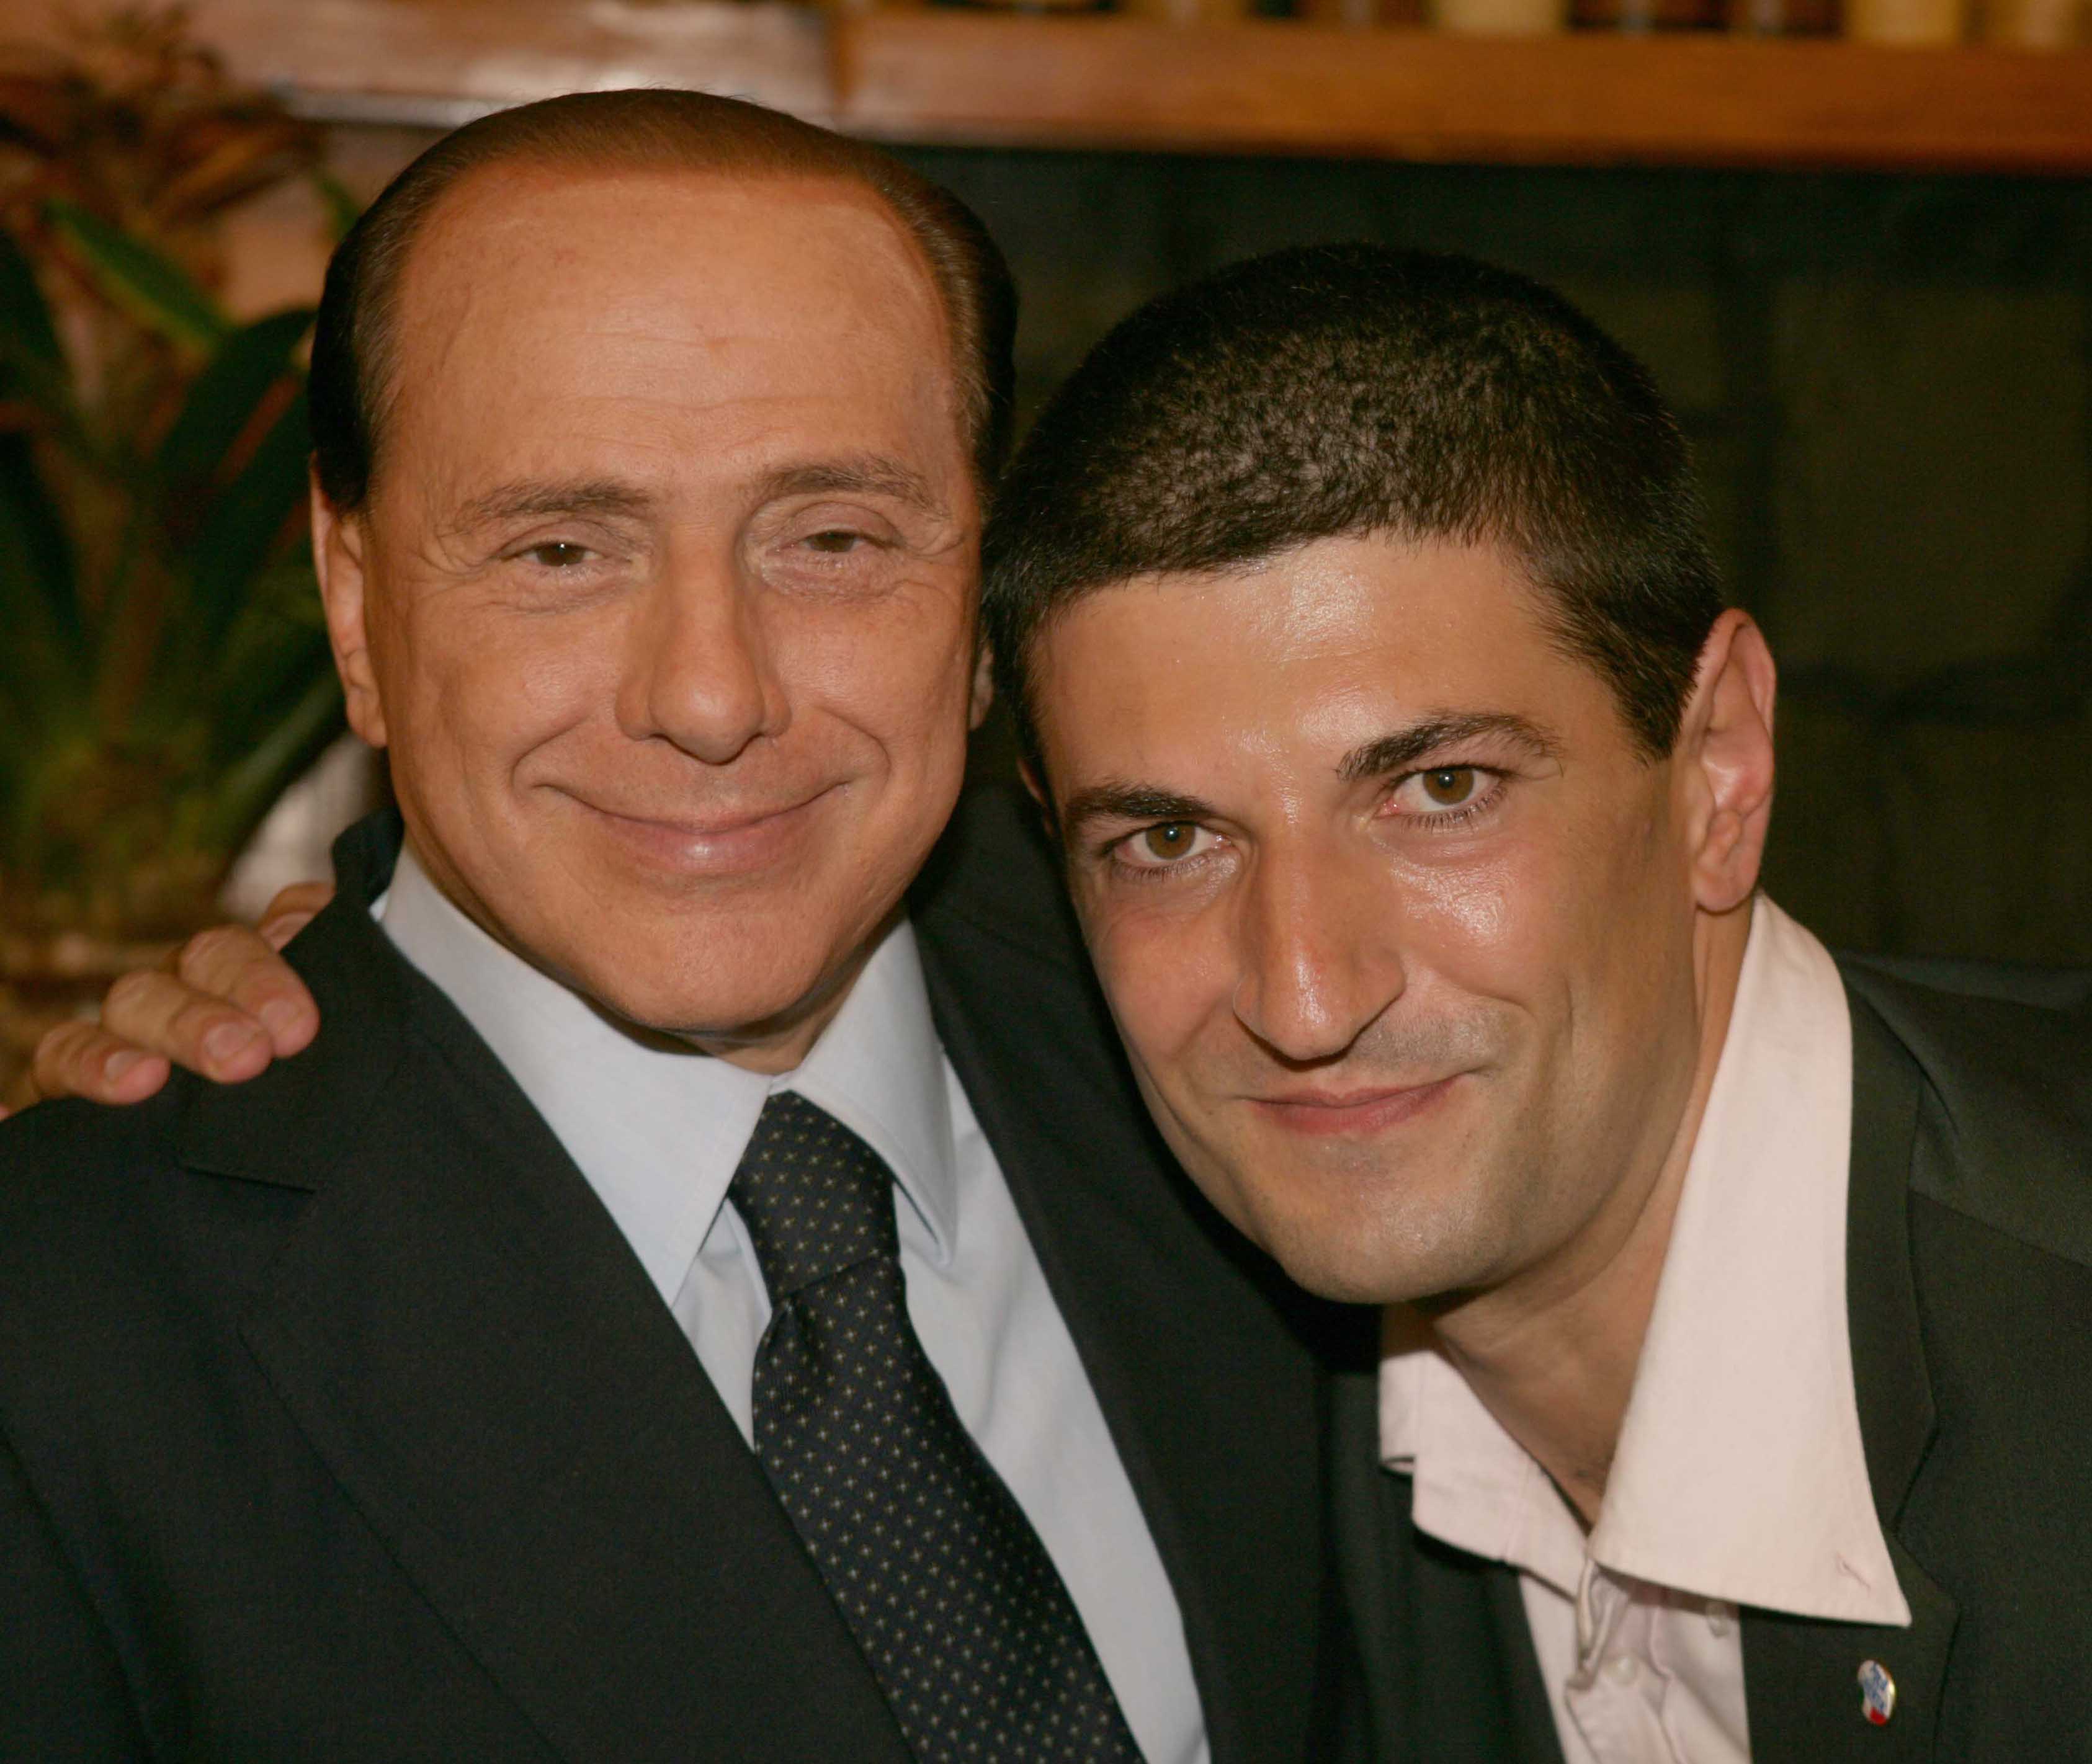 “No caro Silvio”: lettera aperta di Silighini a Berlusconi dopo il comizio